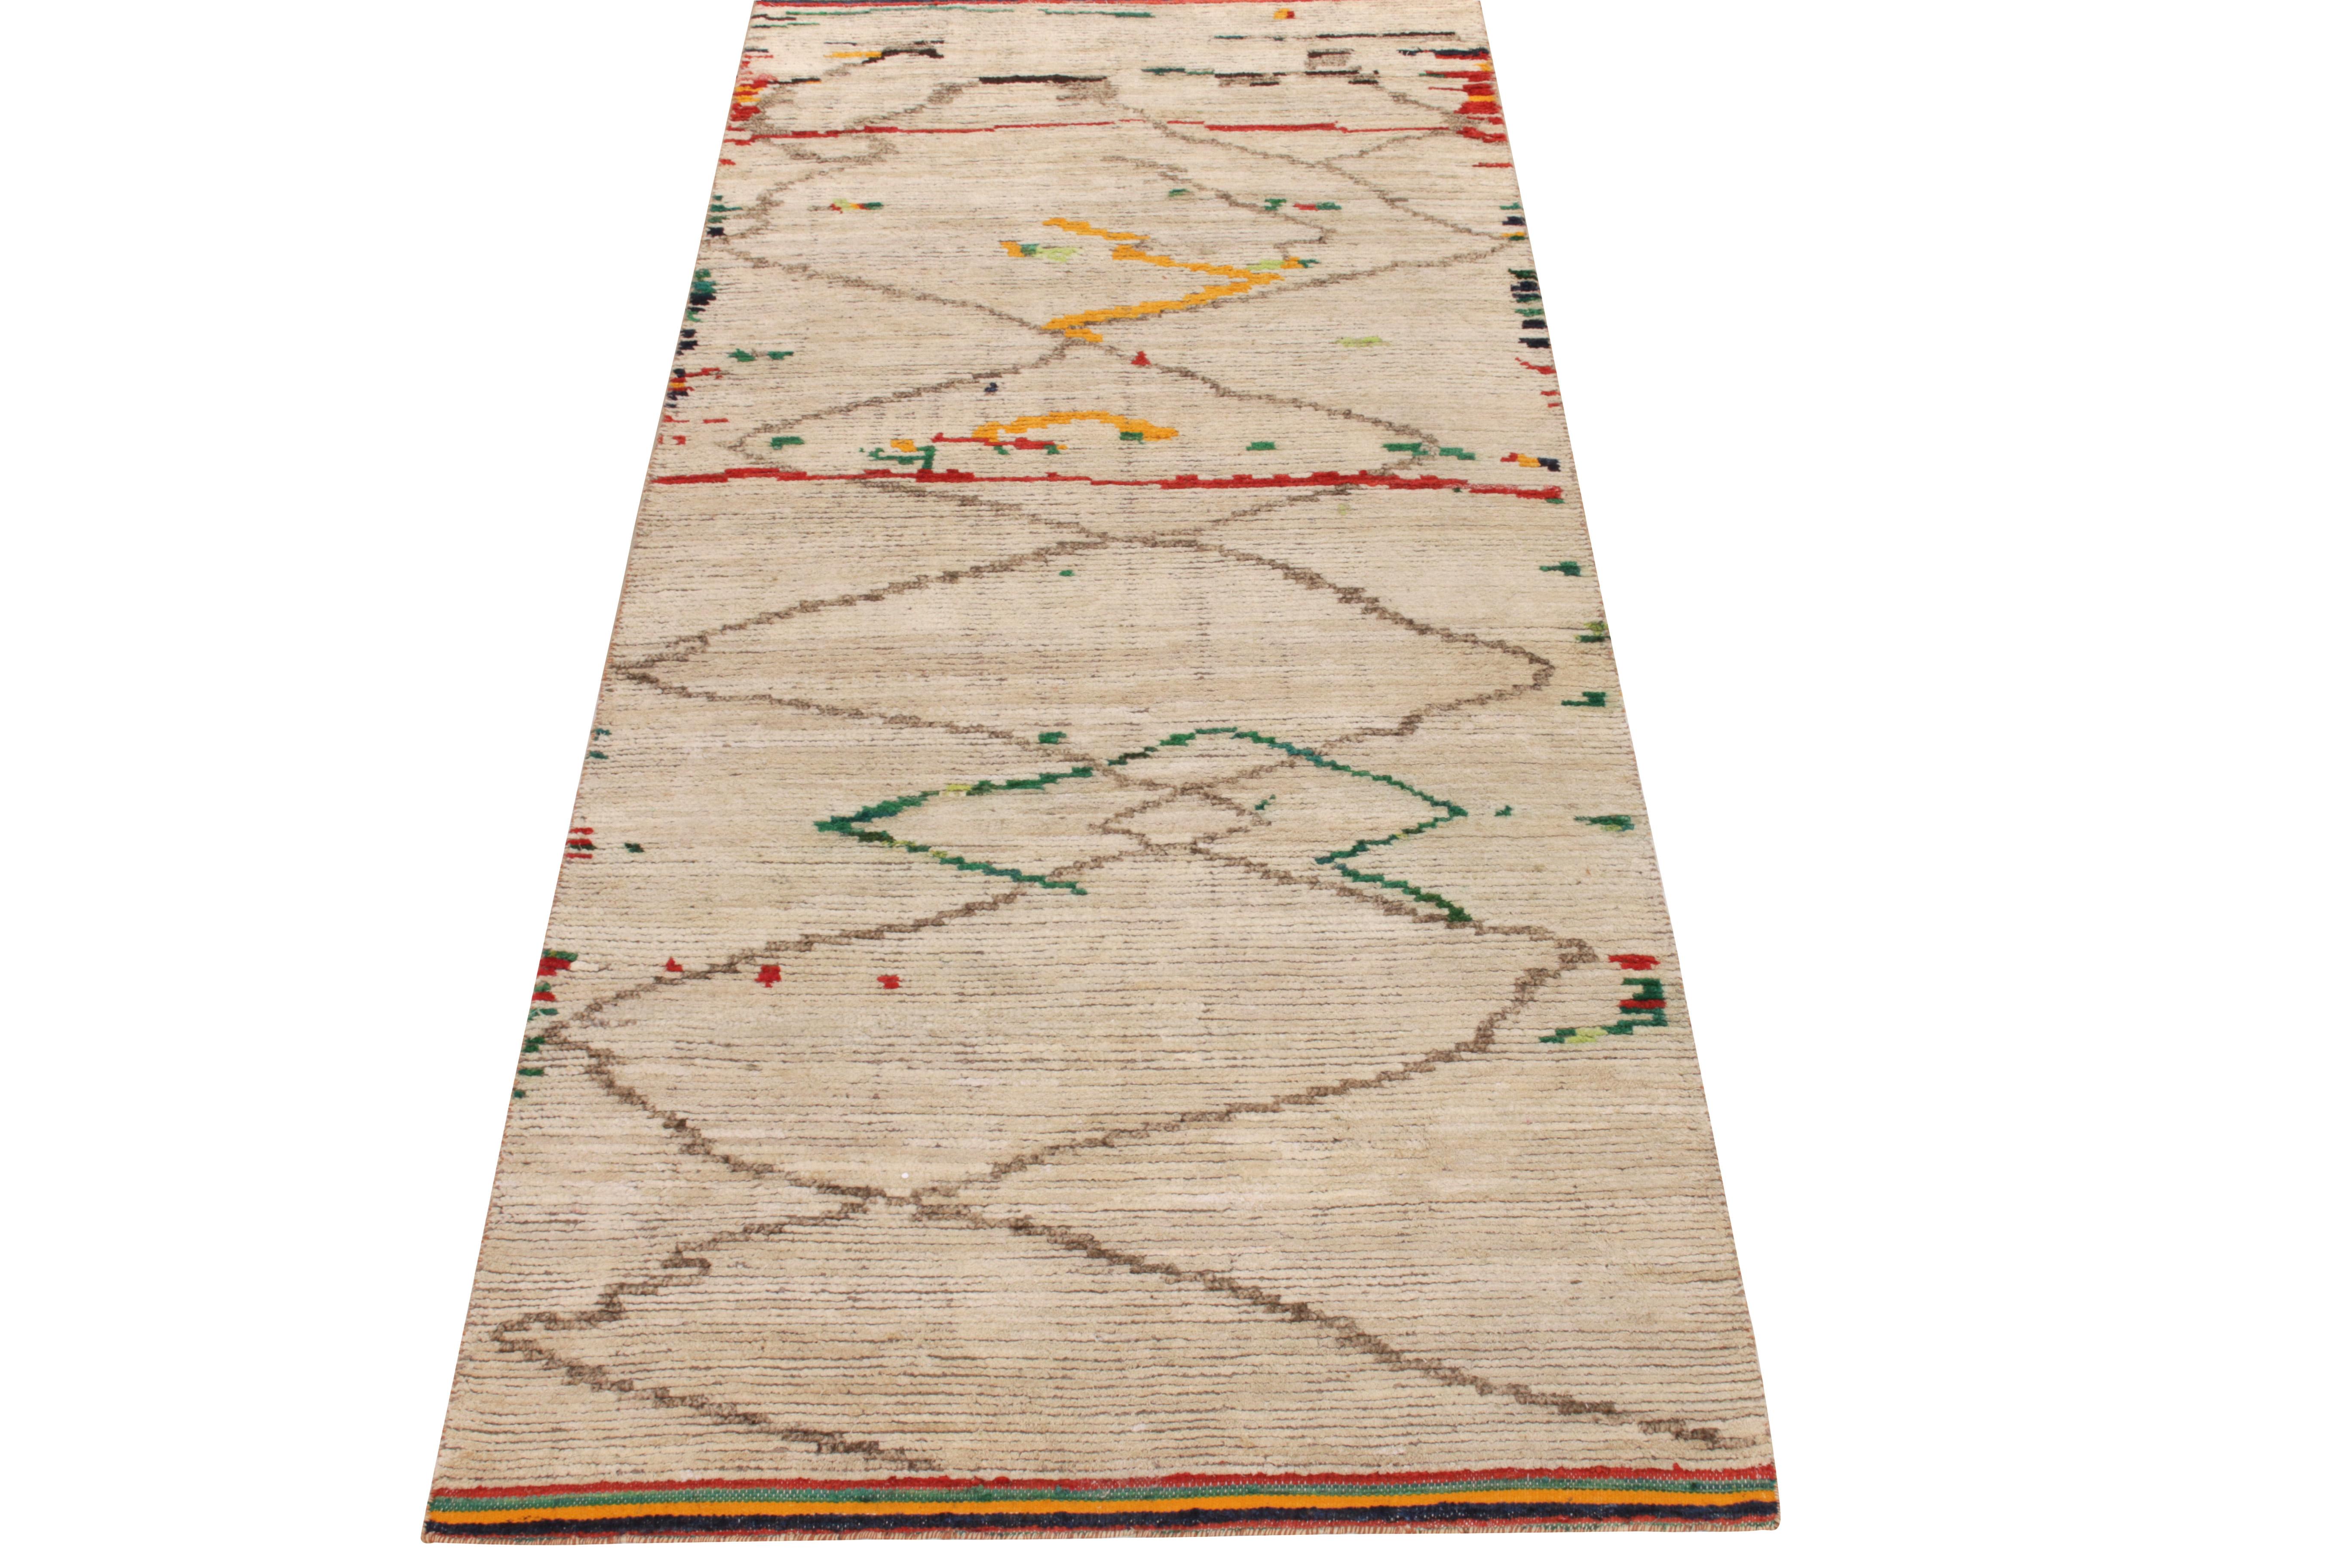 L'ode originale de Rug & Kilim à la conception de tapis marocains, portant un velours sain et luxueux dans un beige crémeux maternant confortablement un motif géométrique défini dans des tons bruns sourds. L'esthétique tribale de ce style offre un